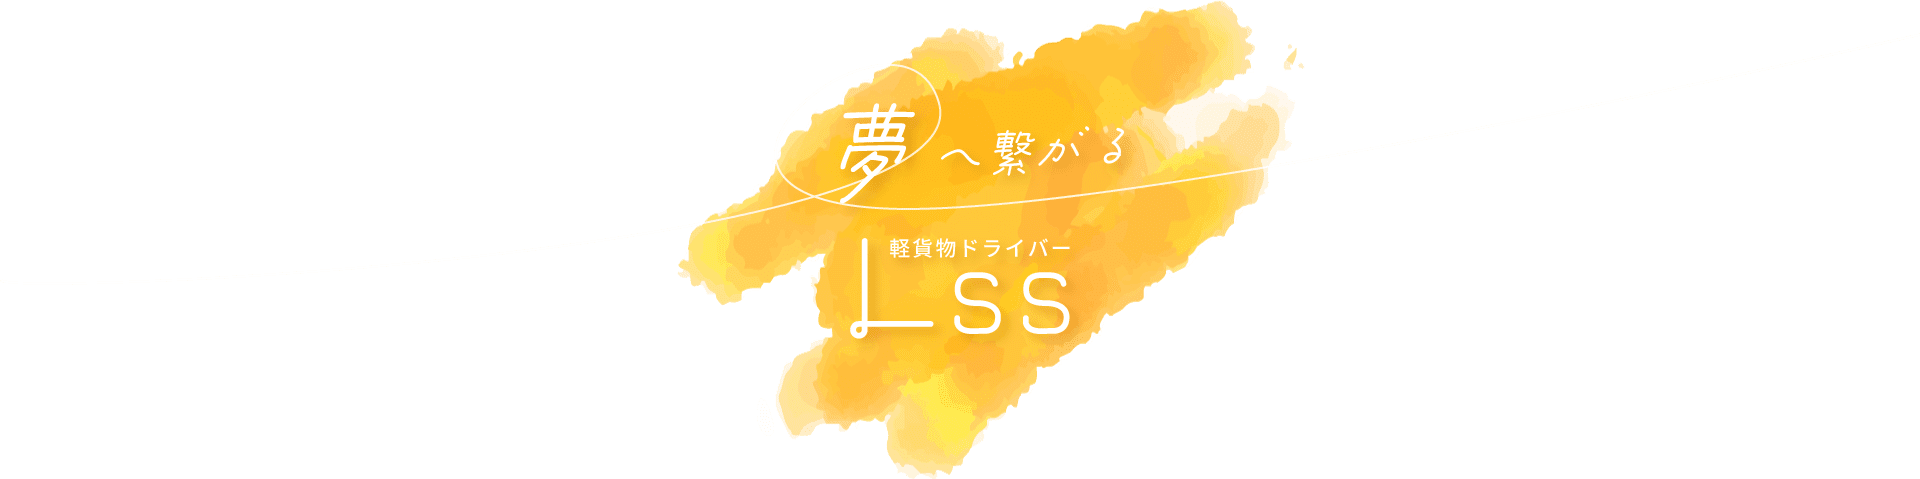 名古屋市守山区で転職をお考えの方は業務委託の軽貨物ドライバーの求人を行う「Lss」へご応募ください。